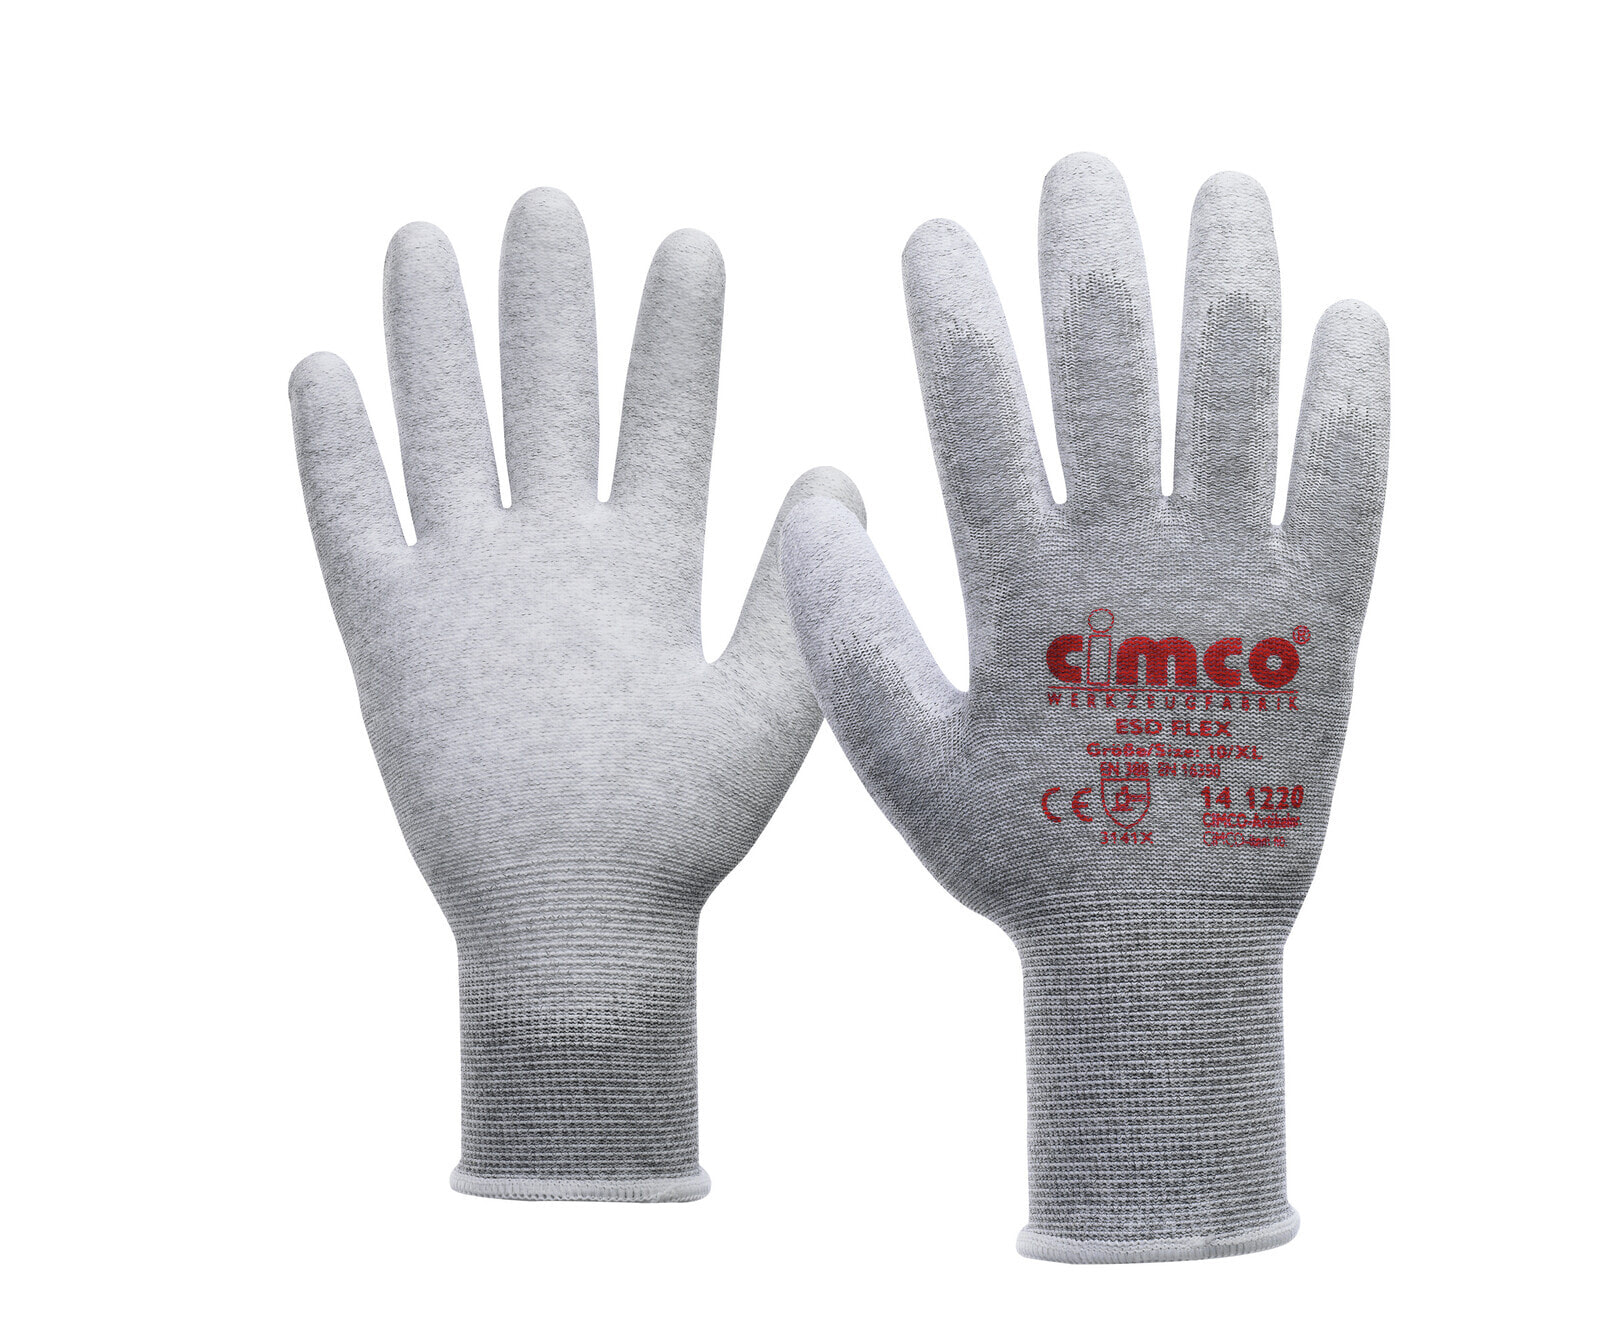 141219 - Workshop gloves - Grey - L - EUE - Adult - Unisex